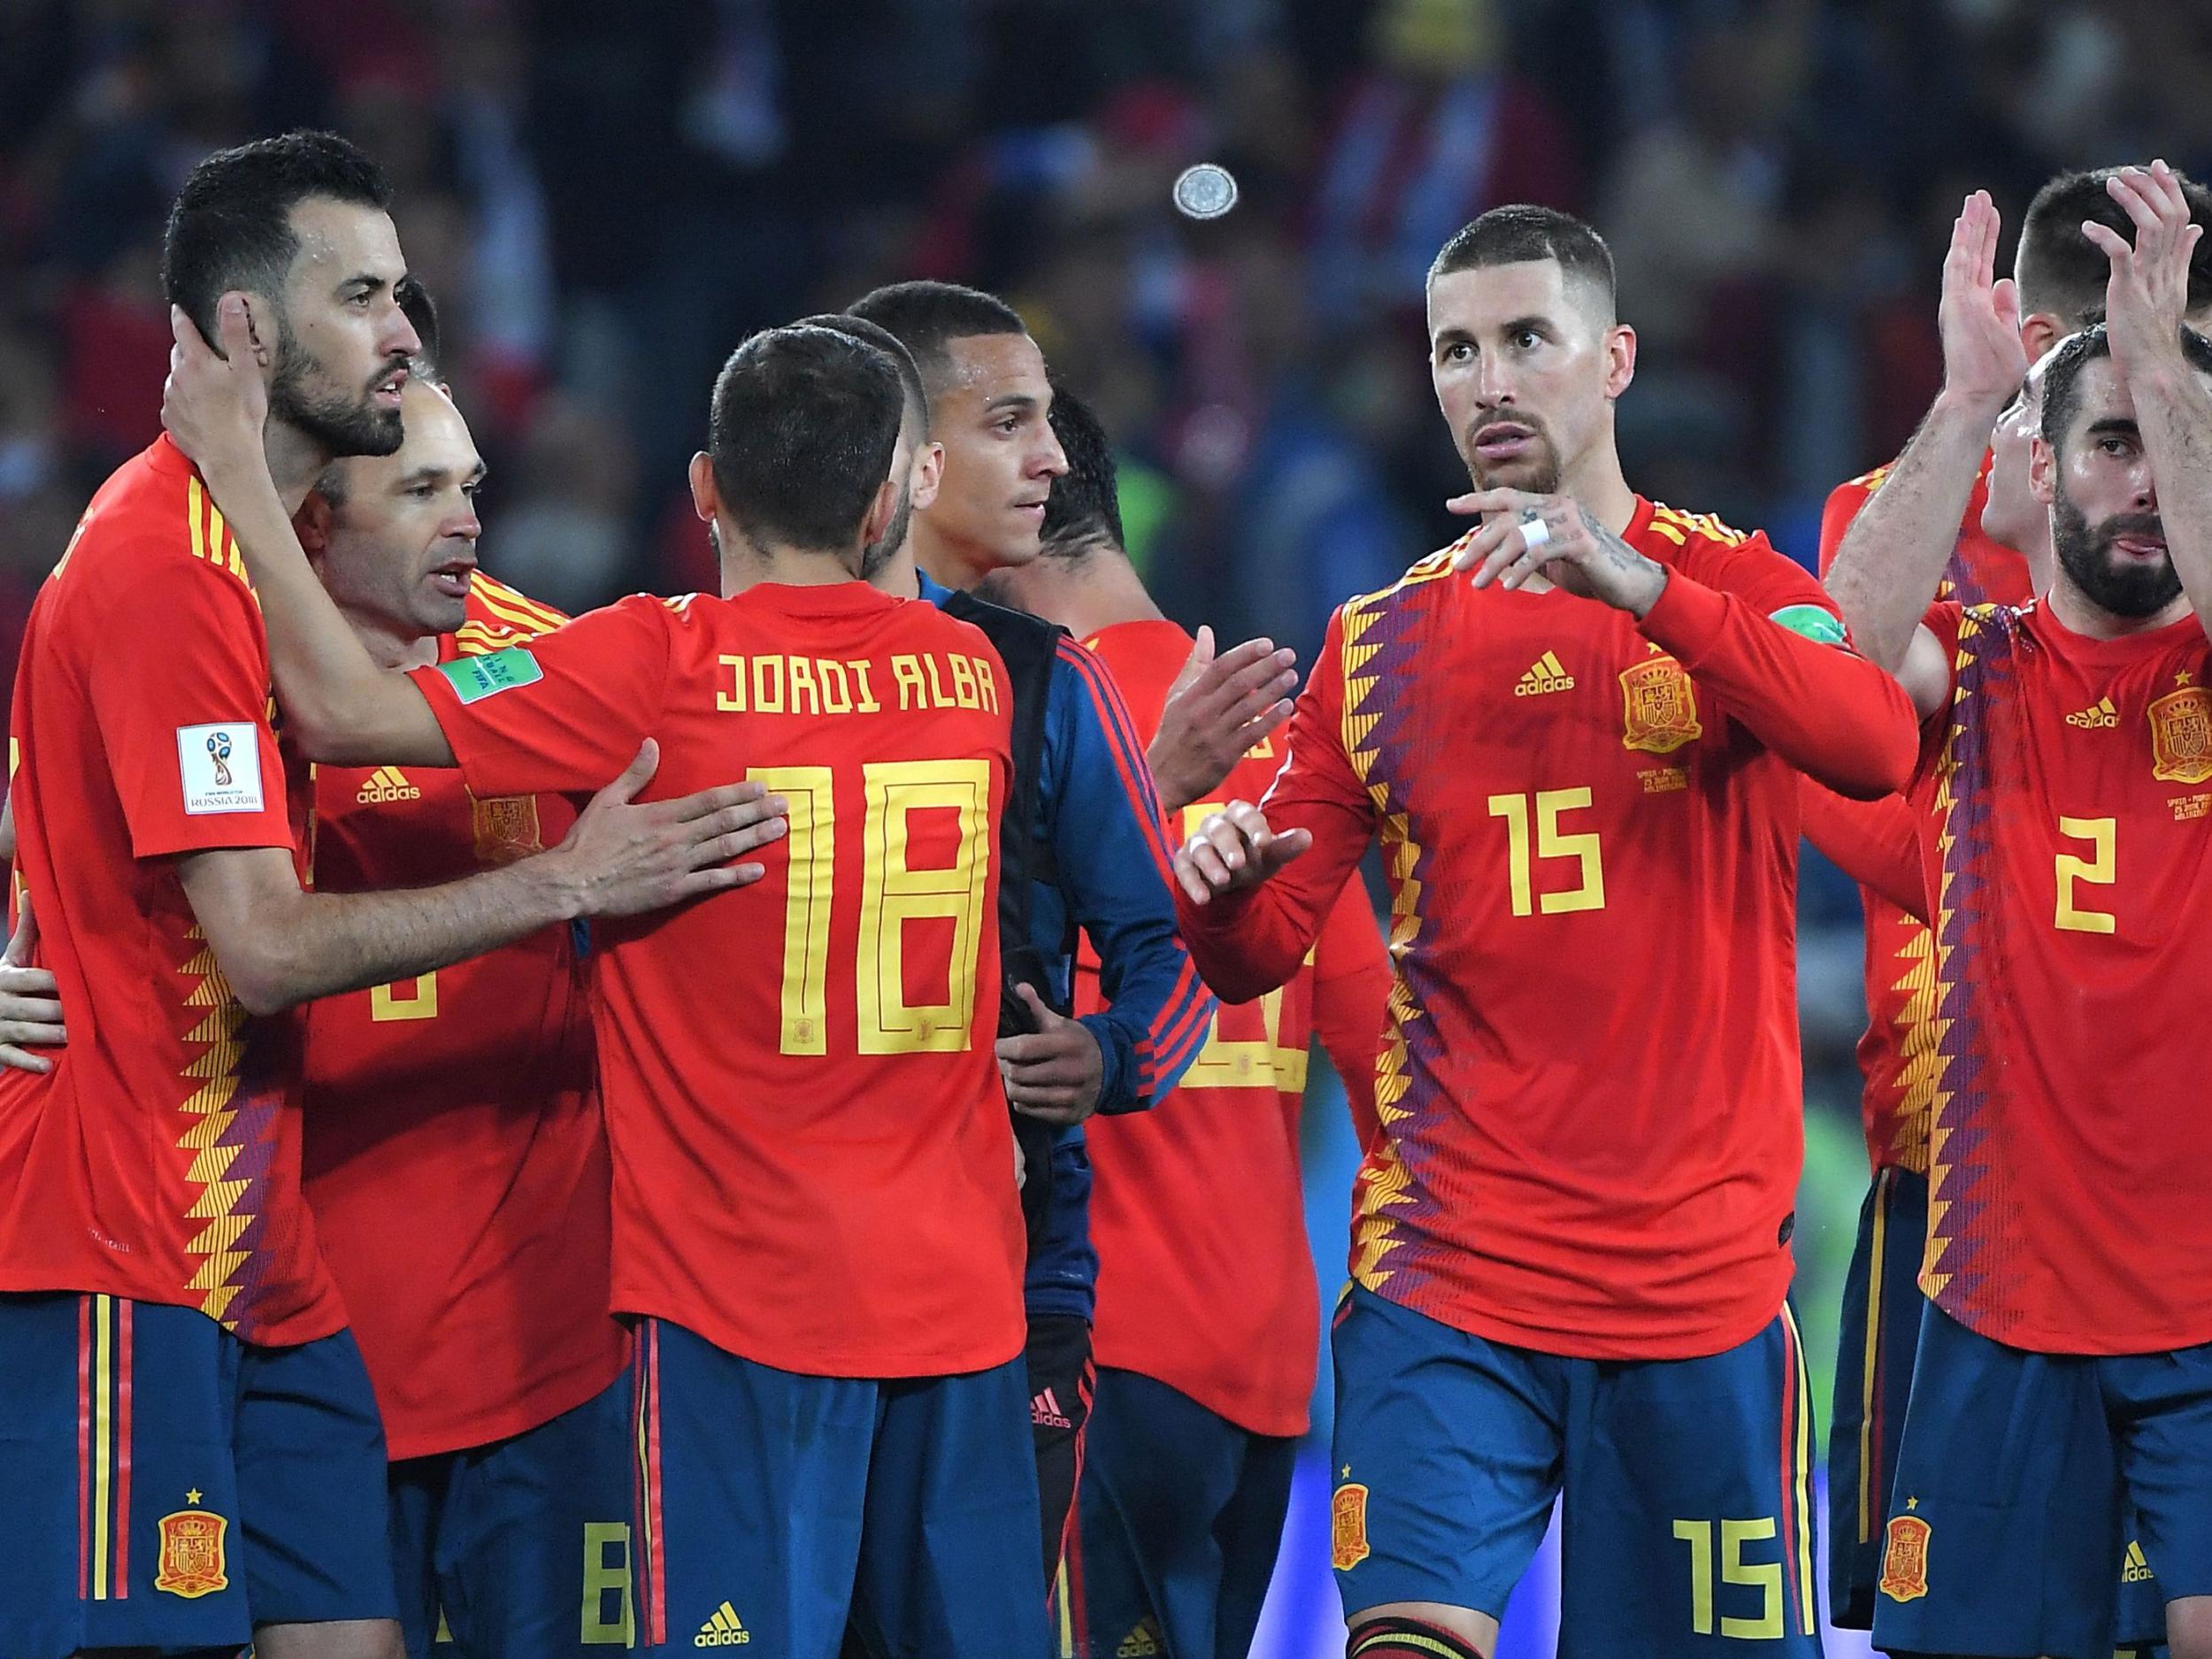 Có lẽ người hâm mộ chỉ quan tâm xem Tây Ban Nha sẽ ghi bao nhiêu bàn thắng vào lưới đảo Faroe